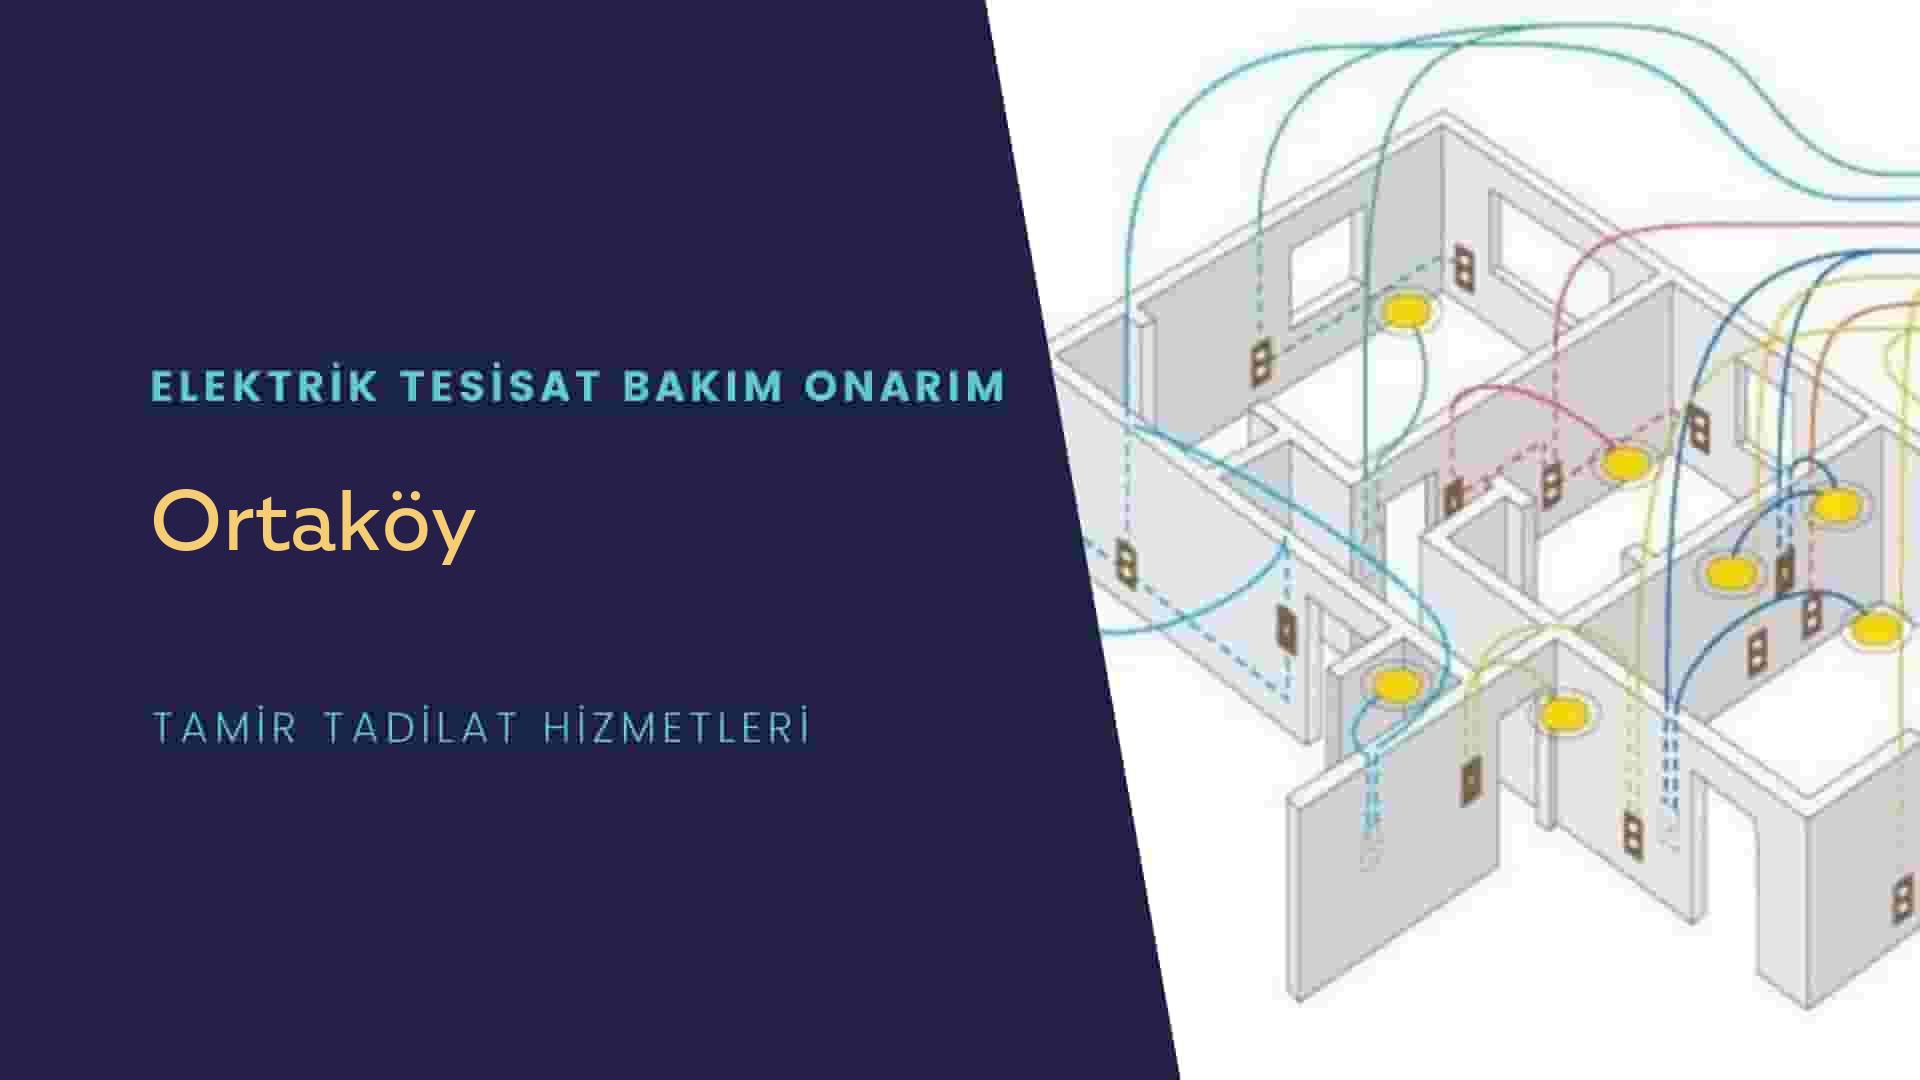 Ortaköy'de elektrik tesisatı ustalarımı arıyorsunuz doğru adrestenizi Ortaköy elektrik tesisatı ustalarımız 7/24 sizlere hizmet vermekten mutluluk duyar.